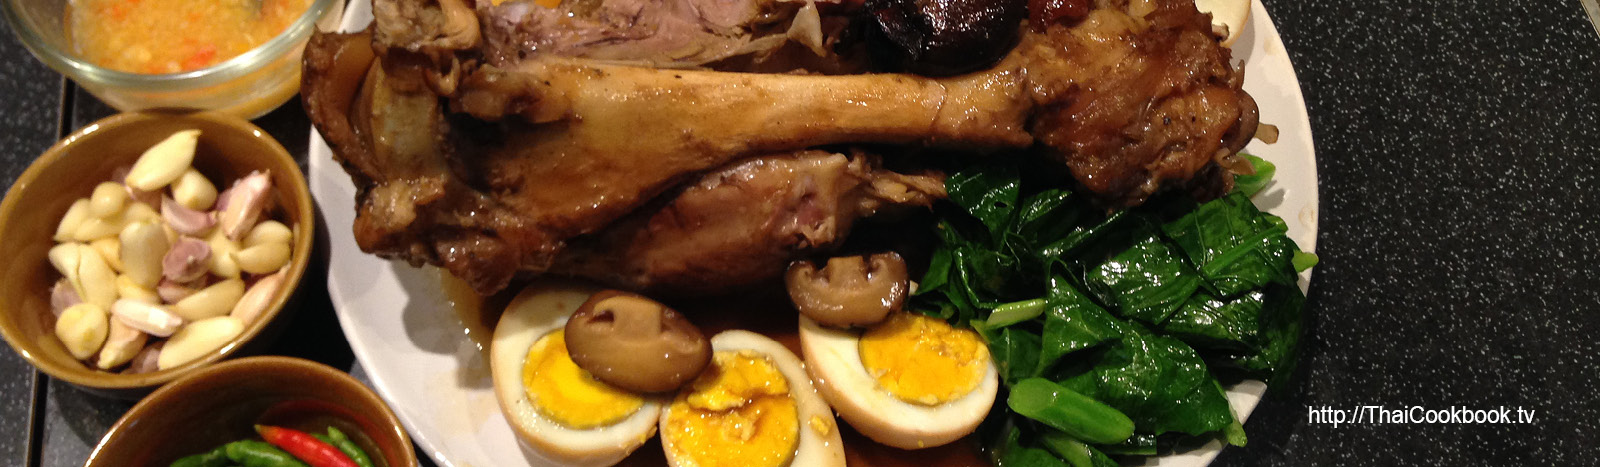 Authentic Thai recipe for Braised Pork Leg